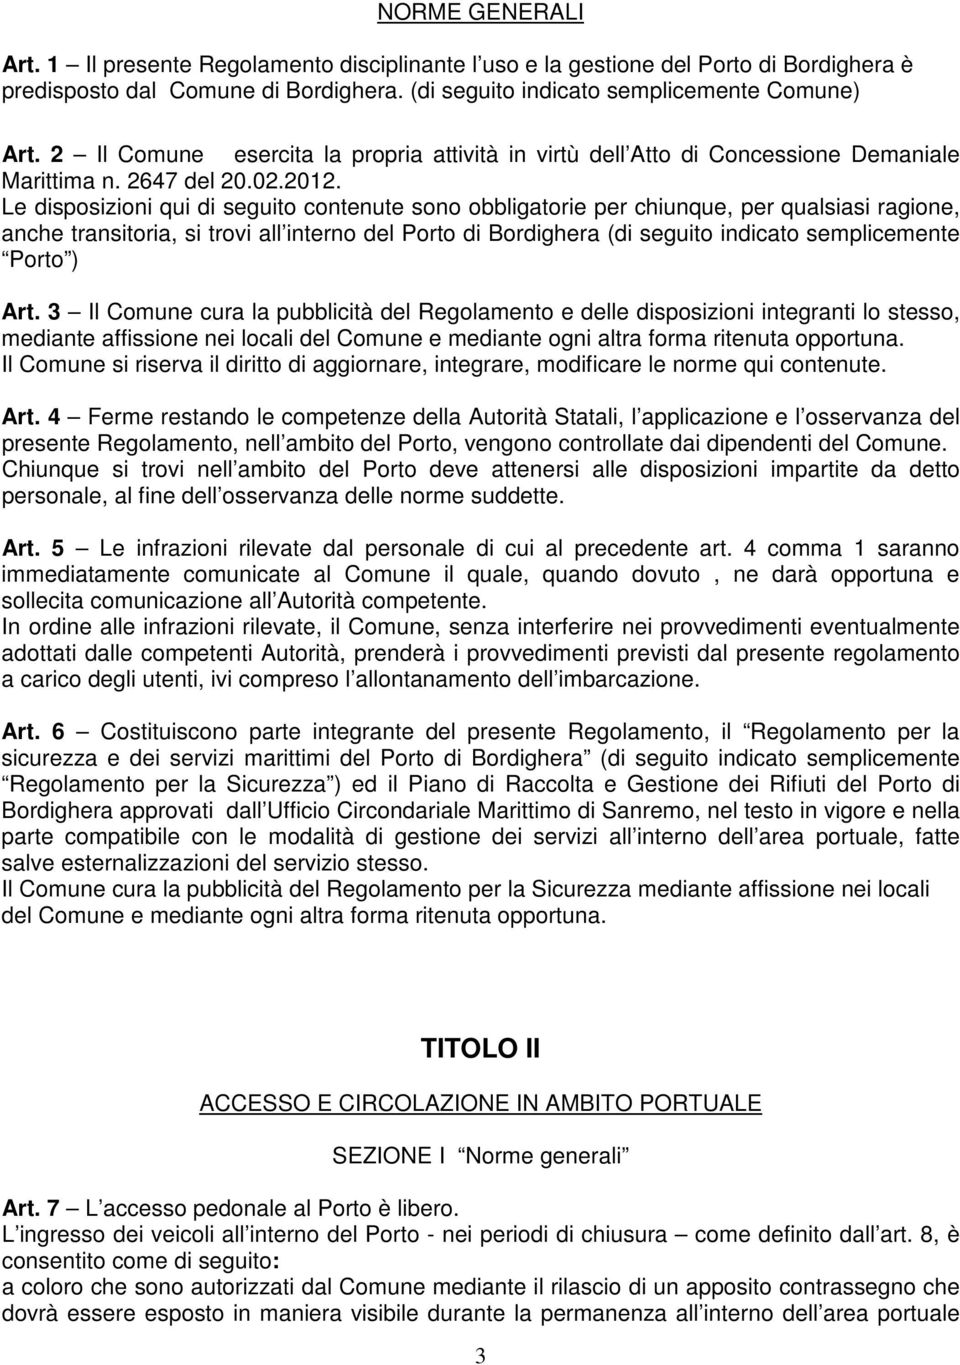 Le disposizioni qui di seguito contenute sono obbligatorie per chiunque, per qualsiasi ragione, anche transitoria, si trovi all interno del Porto di Bordighera (di seguito indicato semplicemente